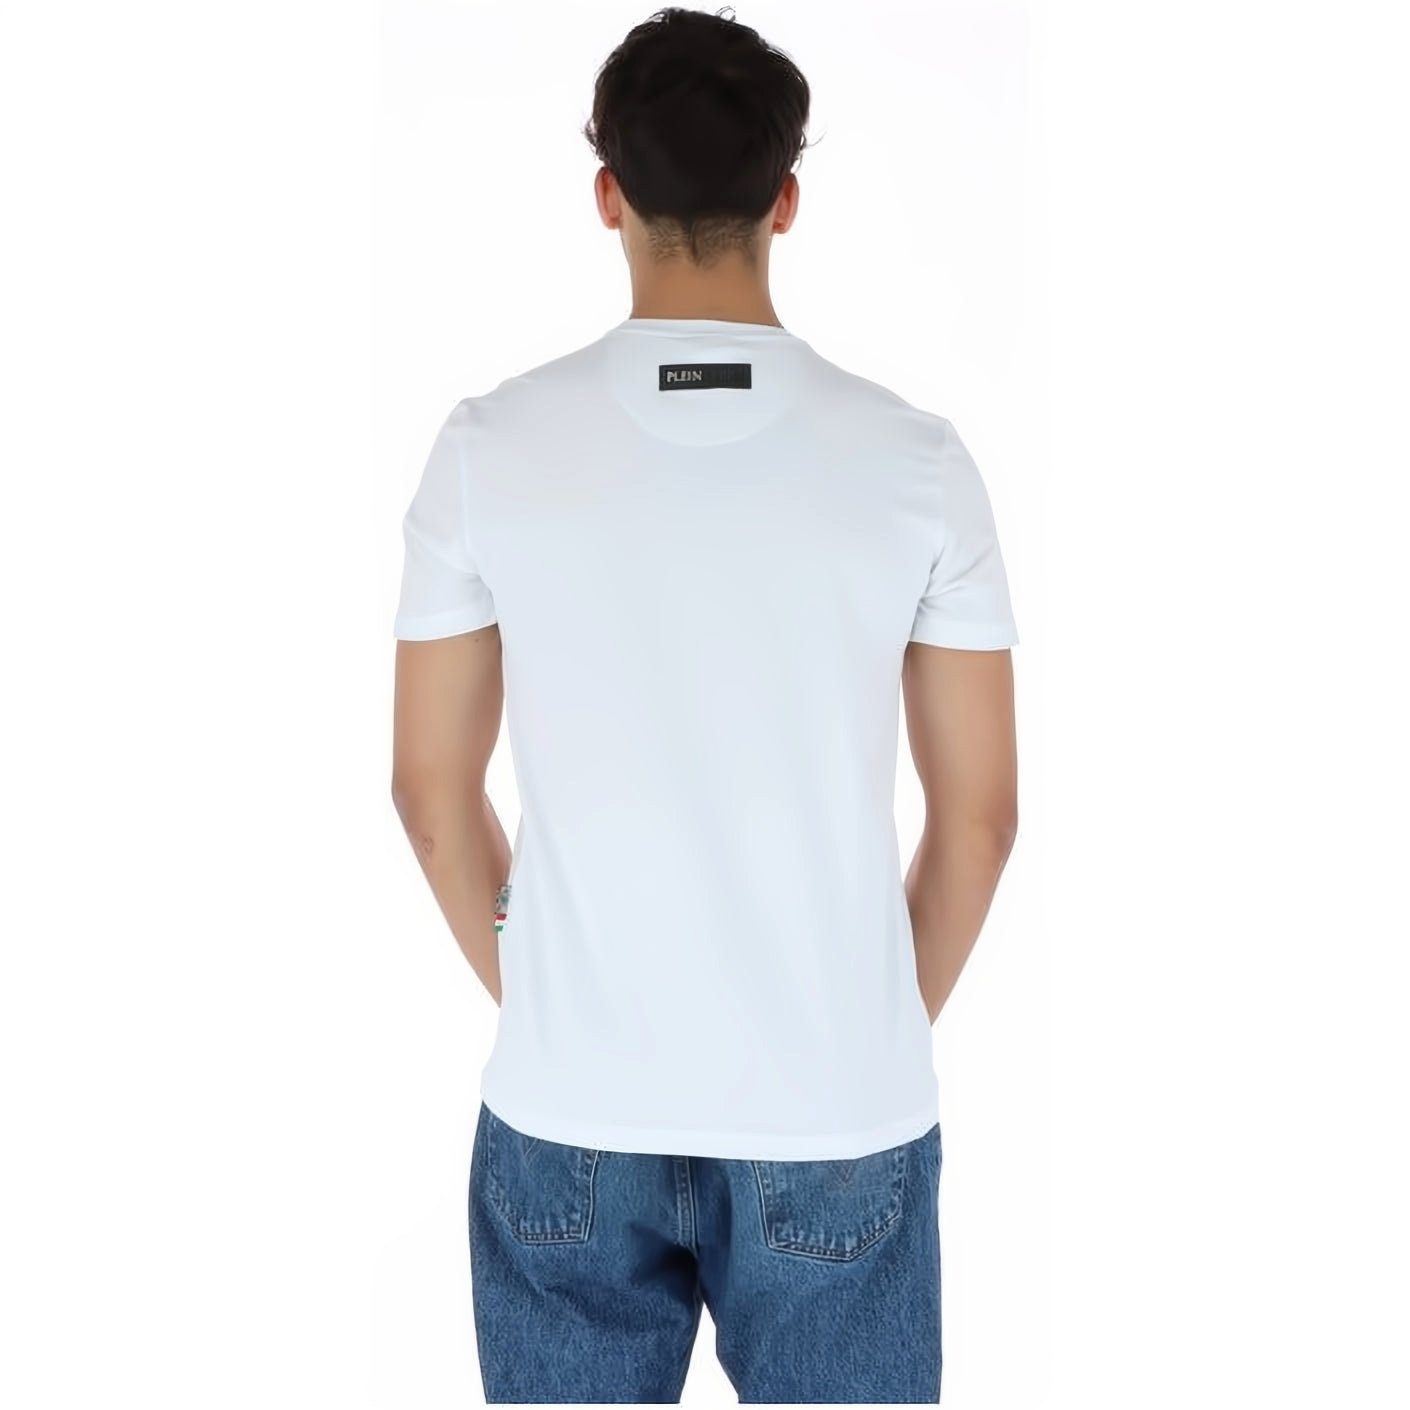 Stylischer ROUND vielfältige Tragekomfort, Farbauswahl PLEIN T-Shirt hoher SPORT Look, NECK